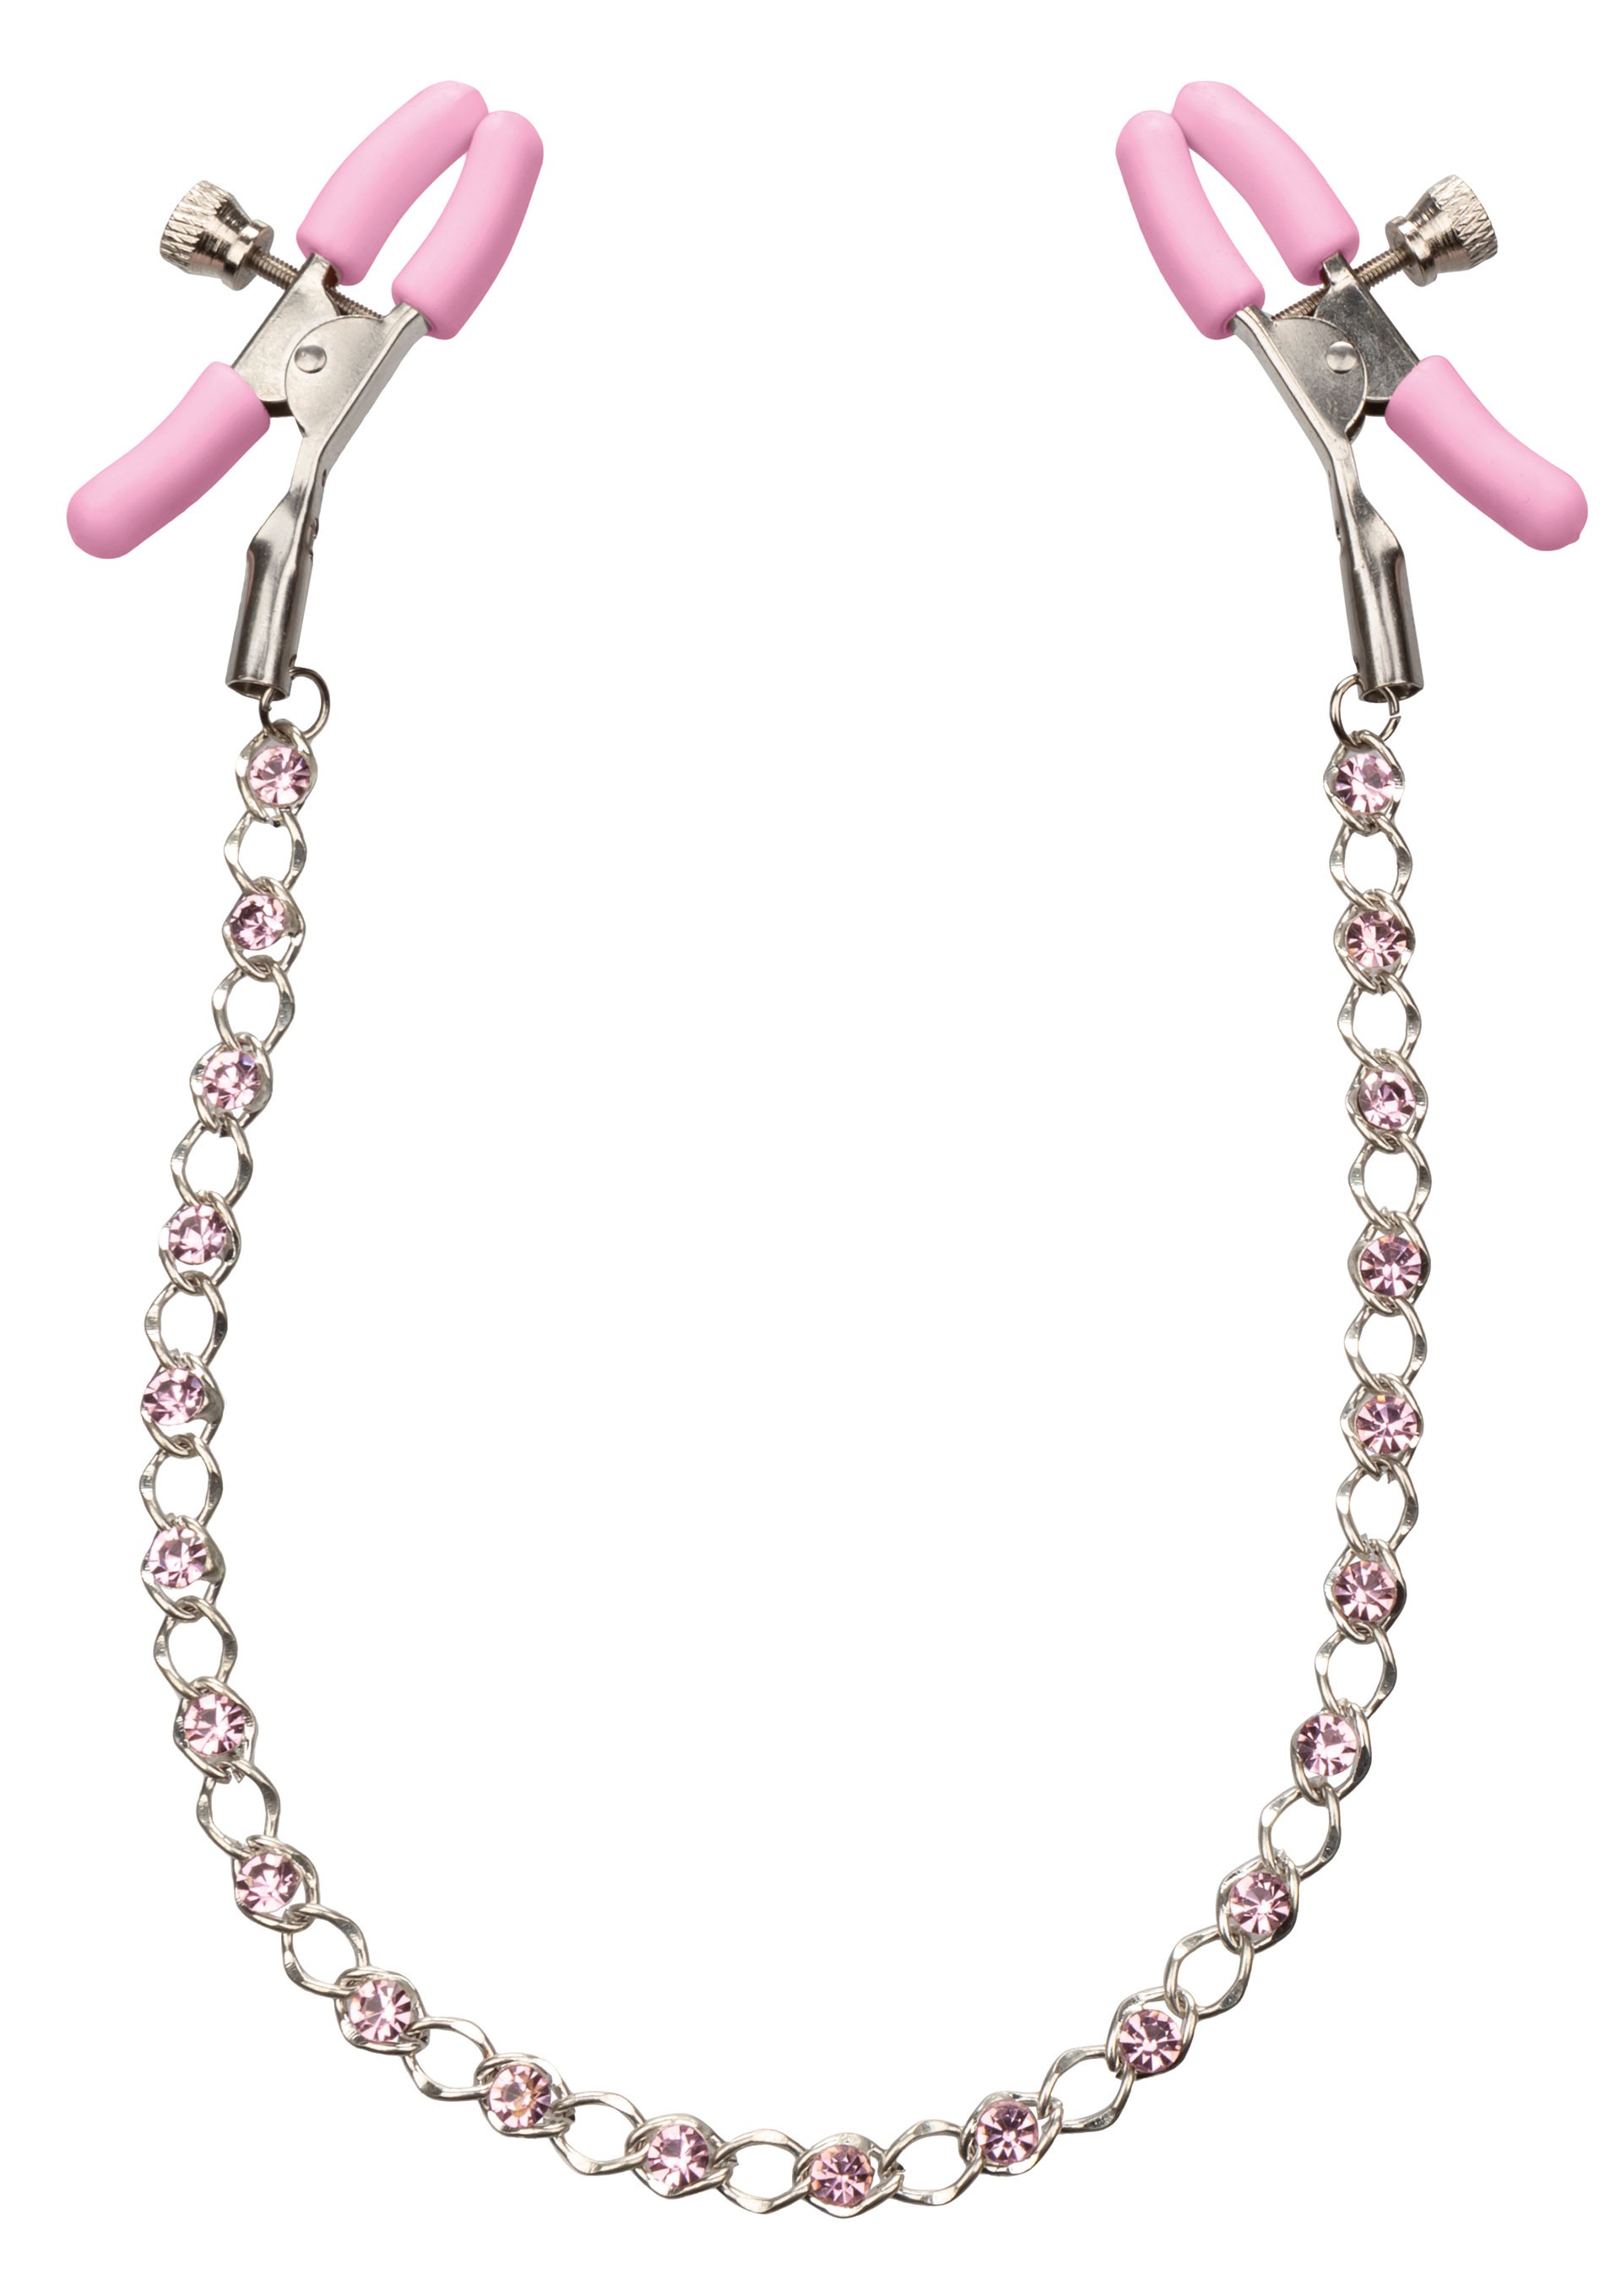 Różowy łańcuszek z zaciskami na sutki ozdobiony kryształkami